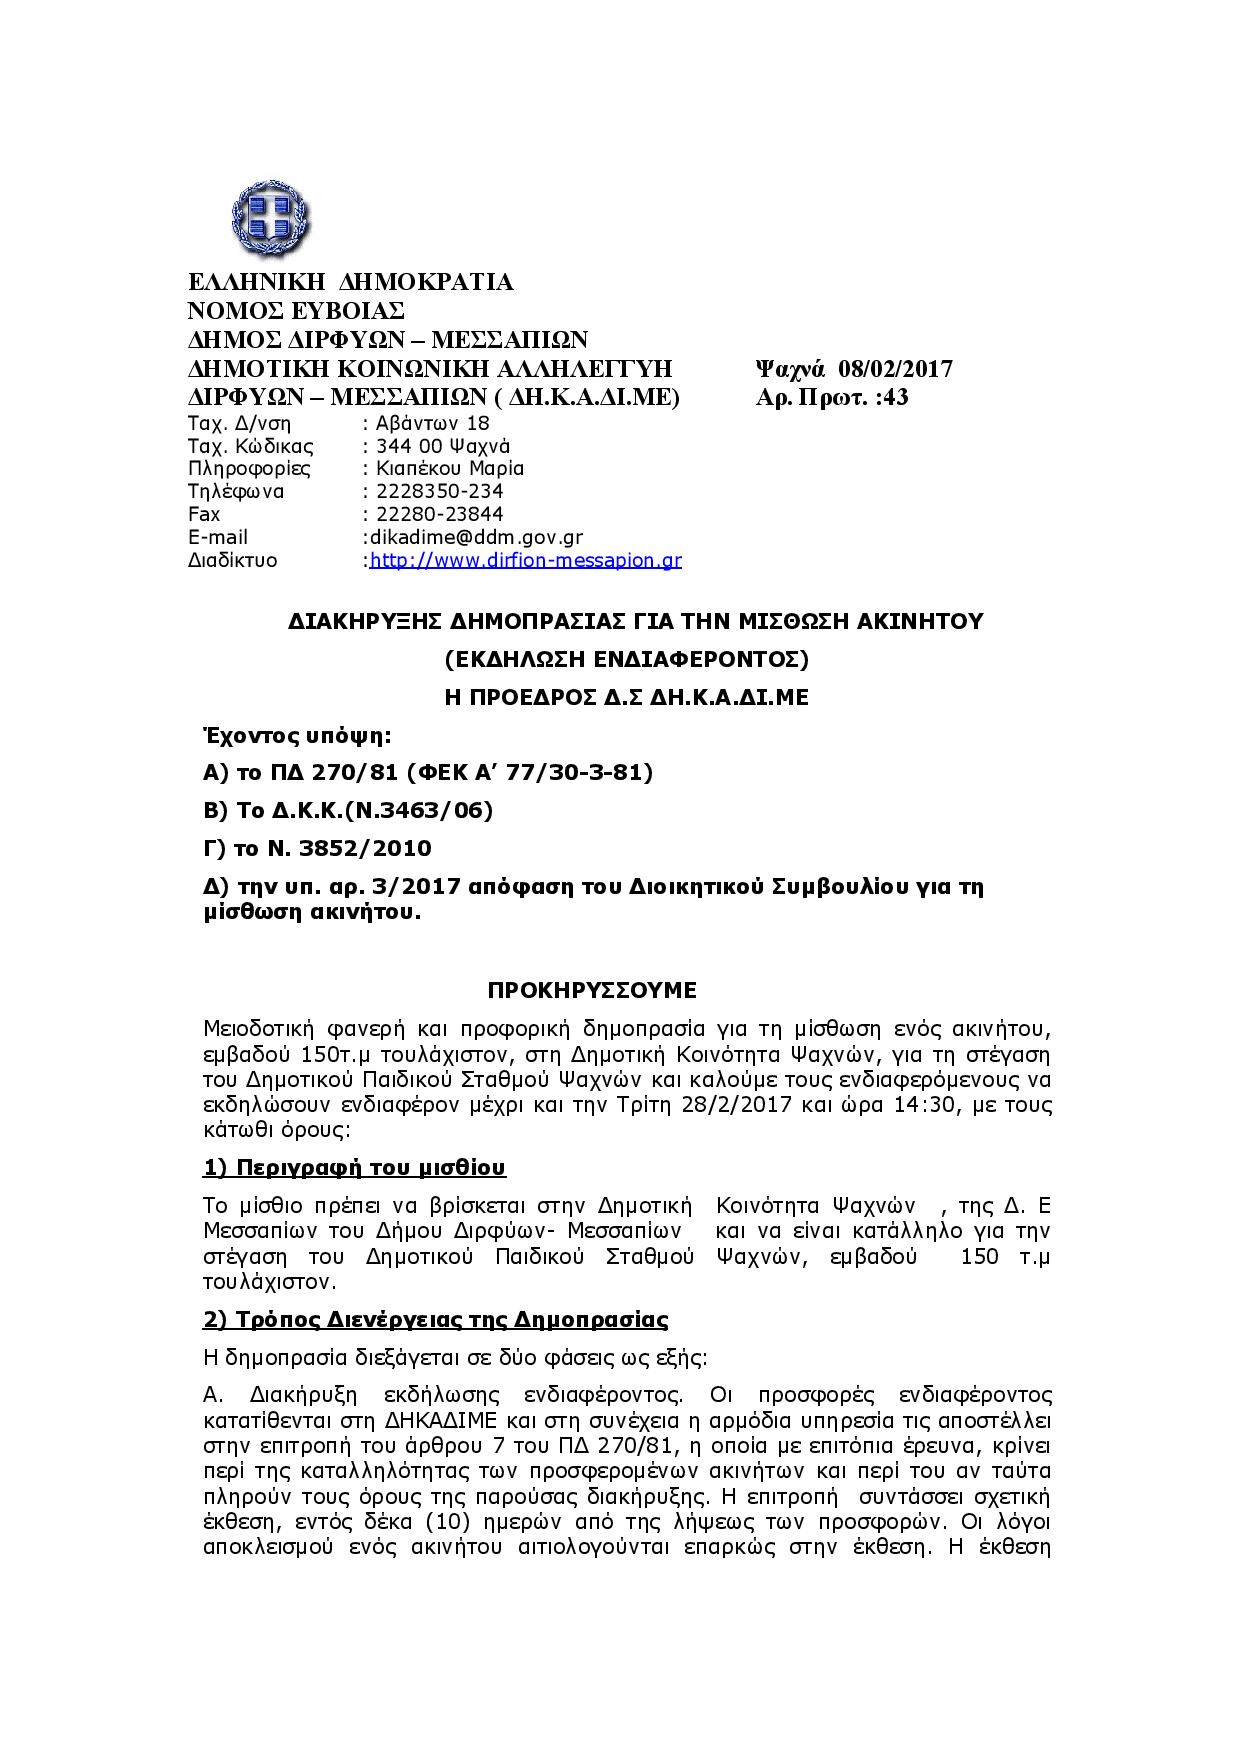 Δήμος Διρφύων Μεσσαπίων: Διακύρηξη για την μίσθωση κτιρίου για στέγαση Παιδικού σταθμού Ψαχνών Document page 001